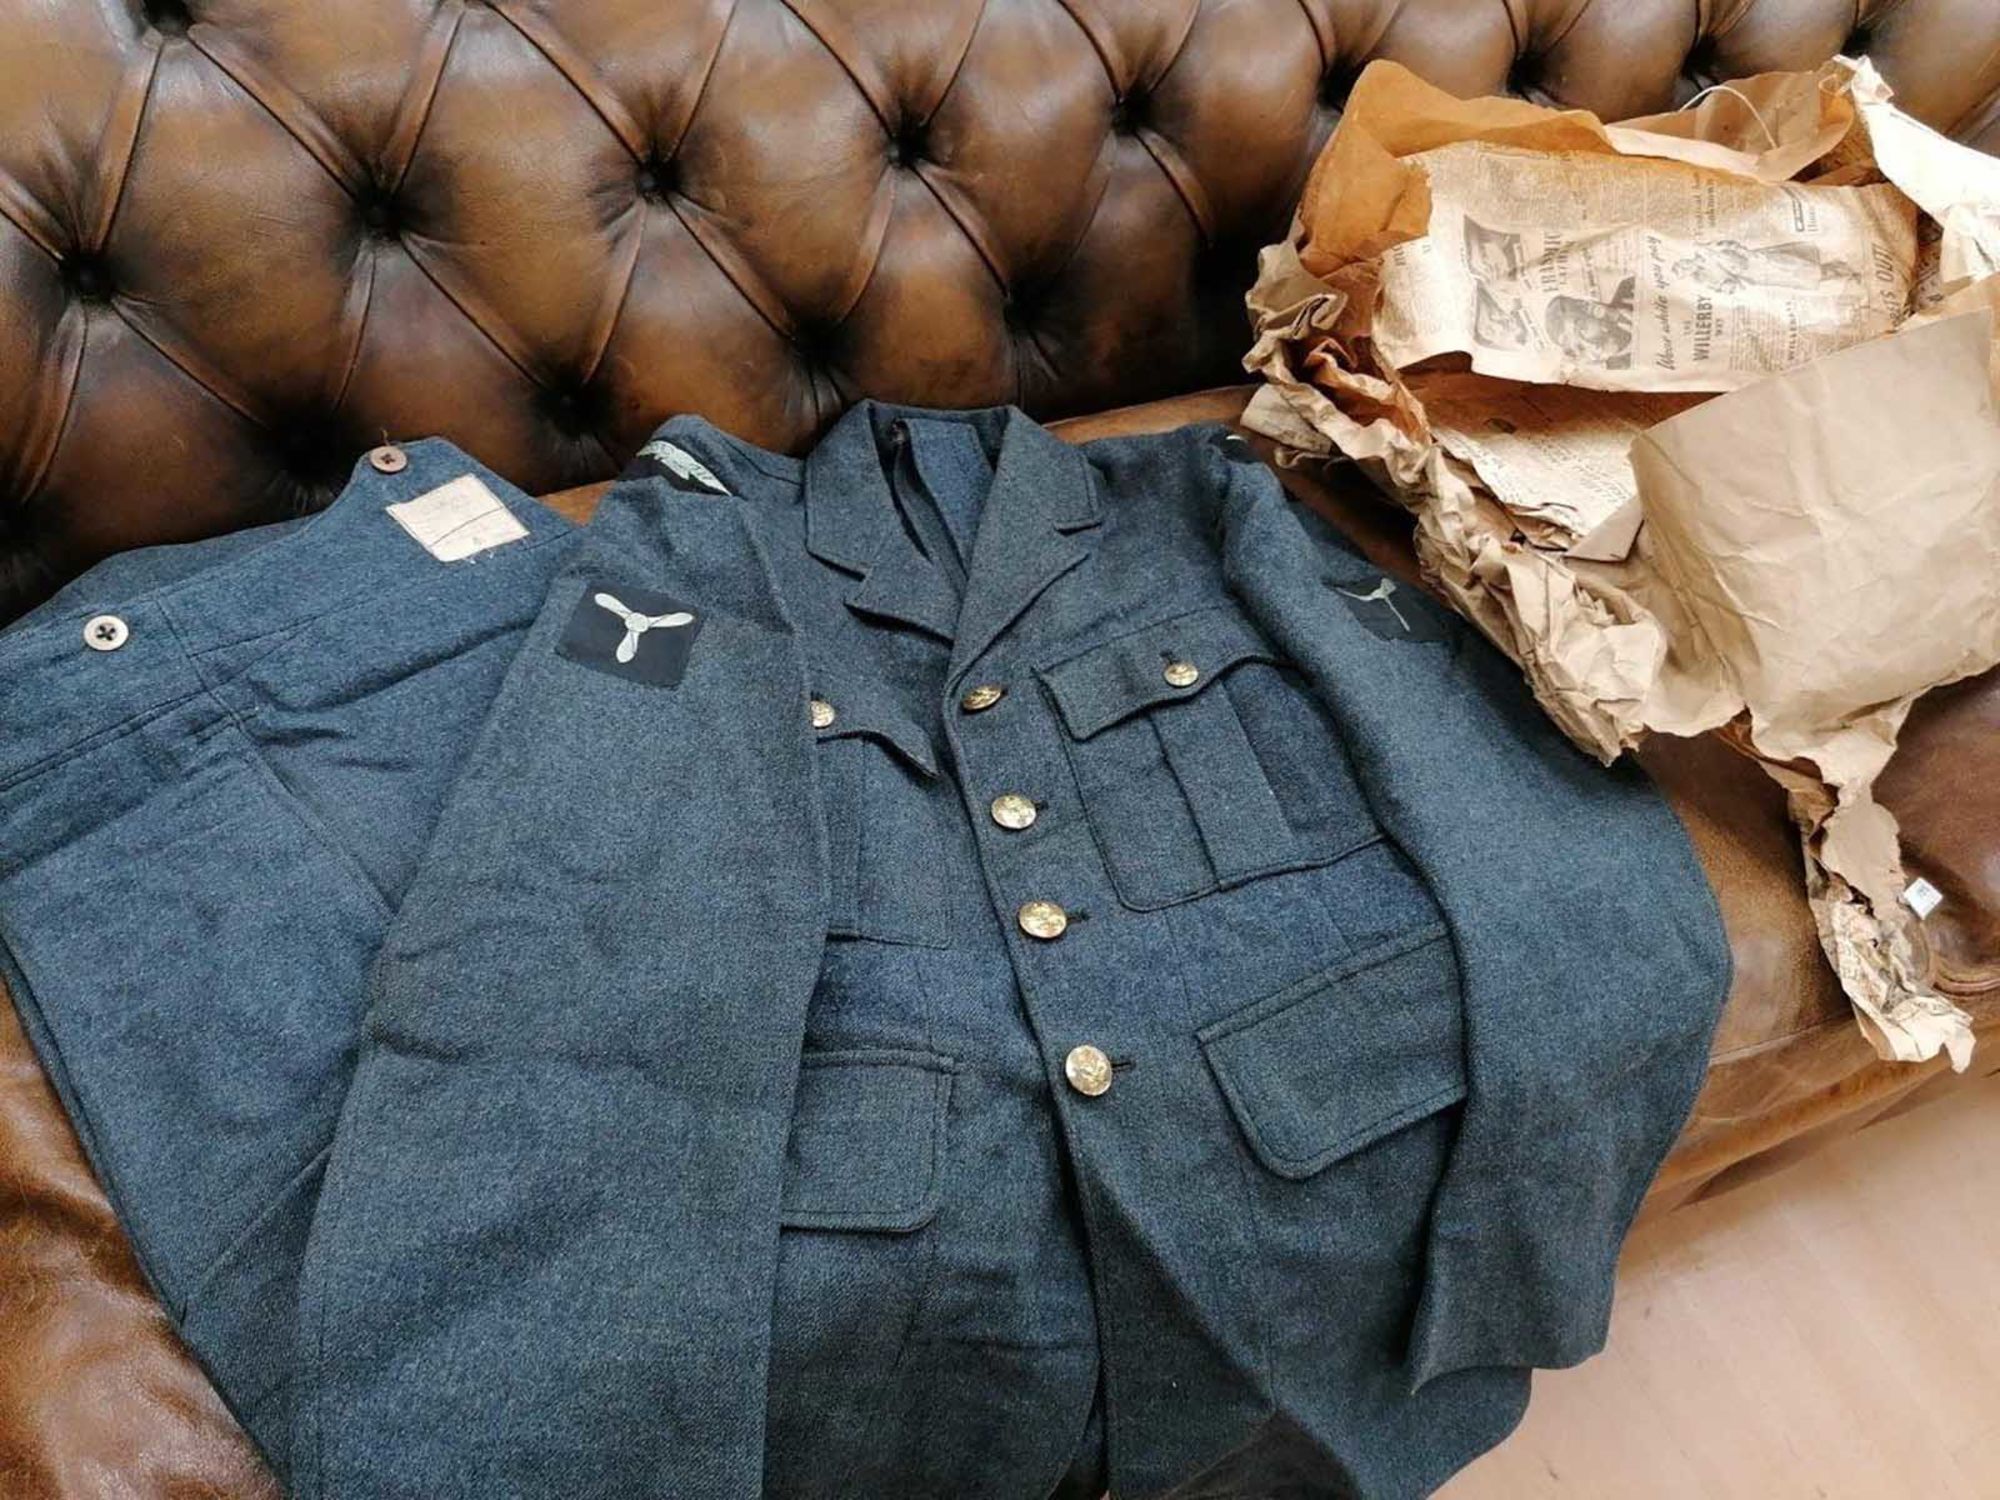 01 British WWII RAF uniform auction